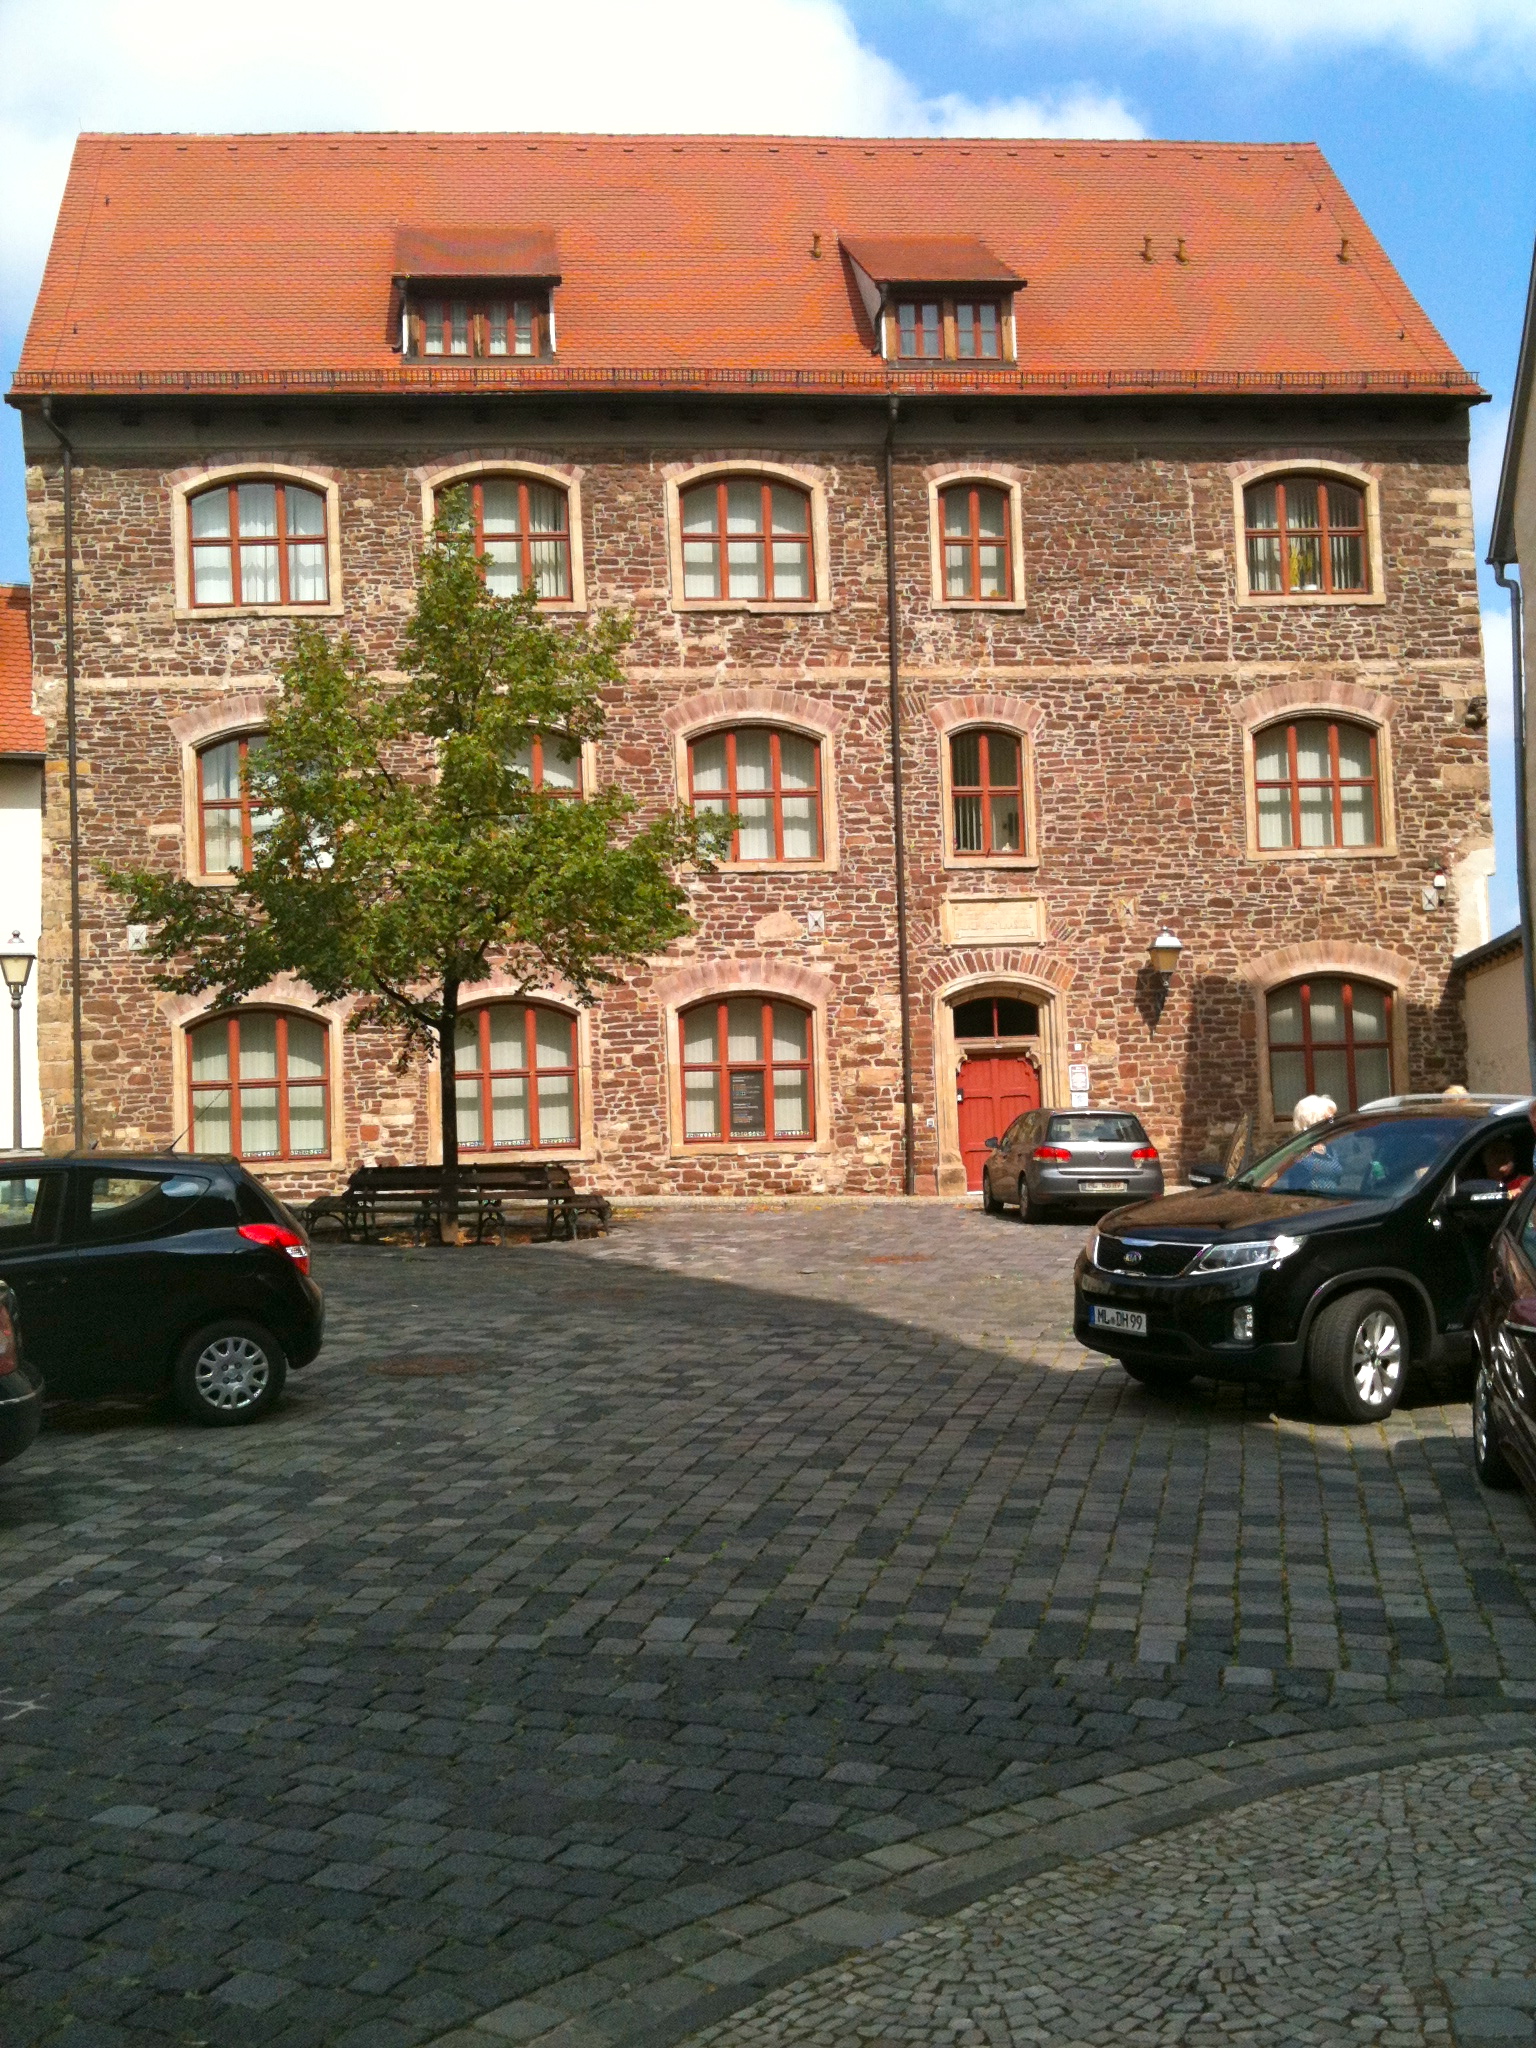 Ehem. Gymnasium, das auf einer Schulgründung 1546 durch Martin Luther basiert ...

Nun Stadtarchiv ...